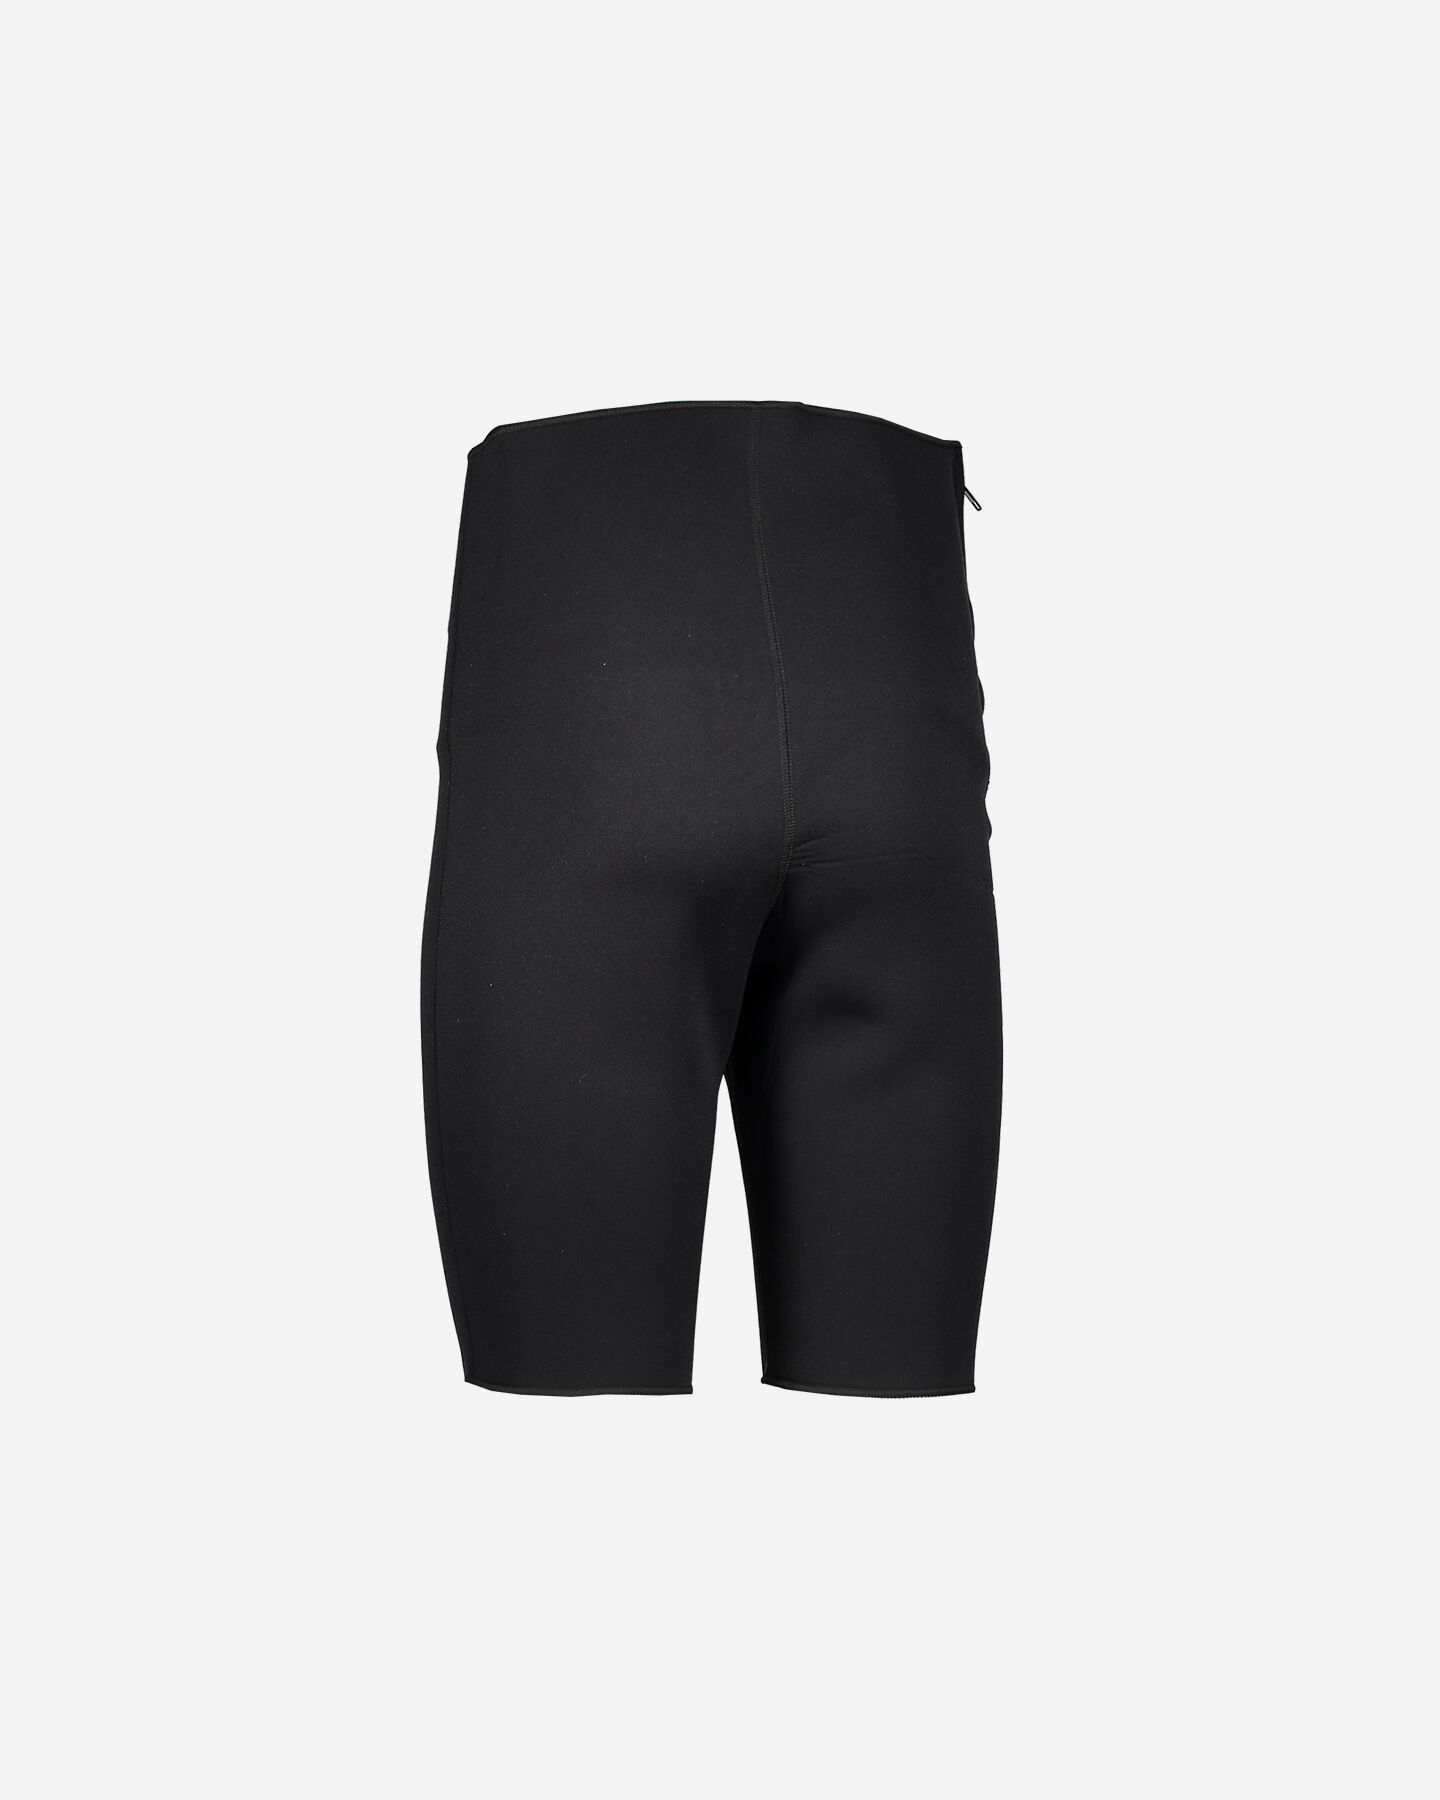 Pantaloni della Muta Pantaloncini da Sub in Neoprene da 2 mm DEWIN Pantaloncini in Neoprene Attrezzatura da Sub